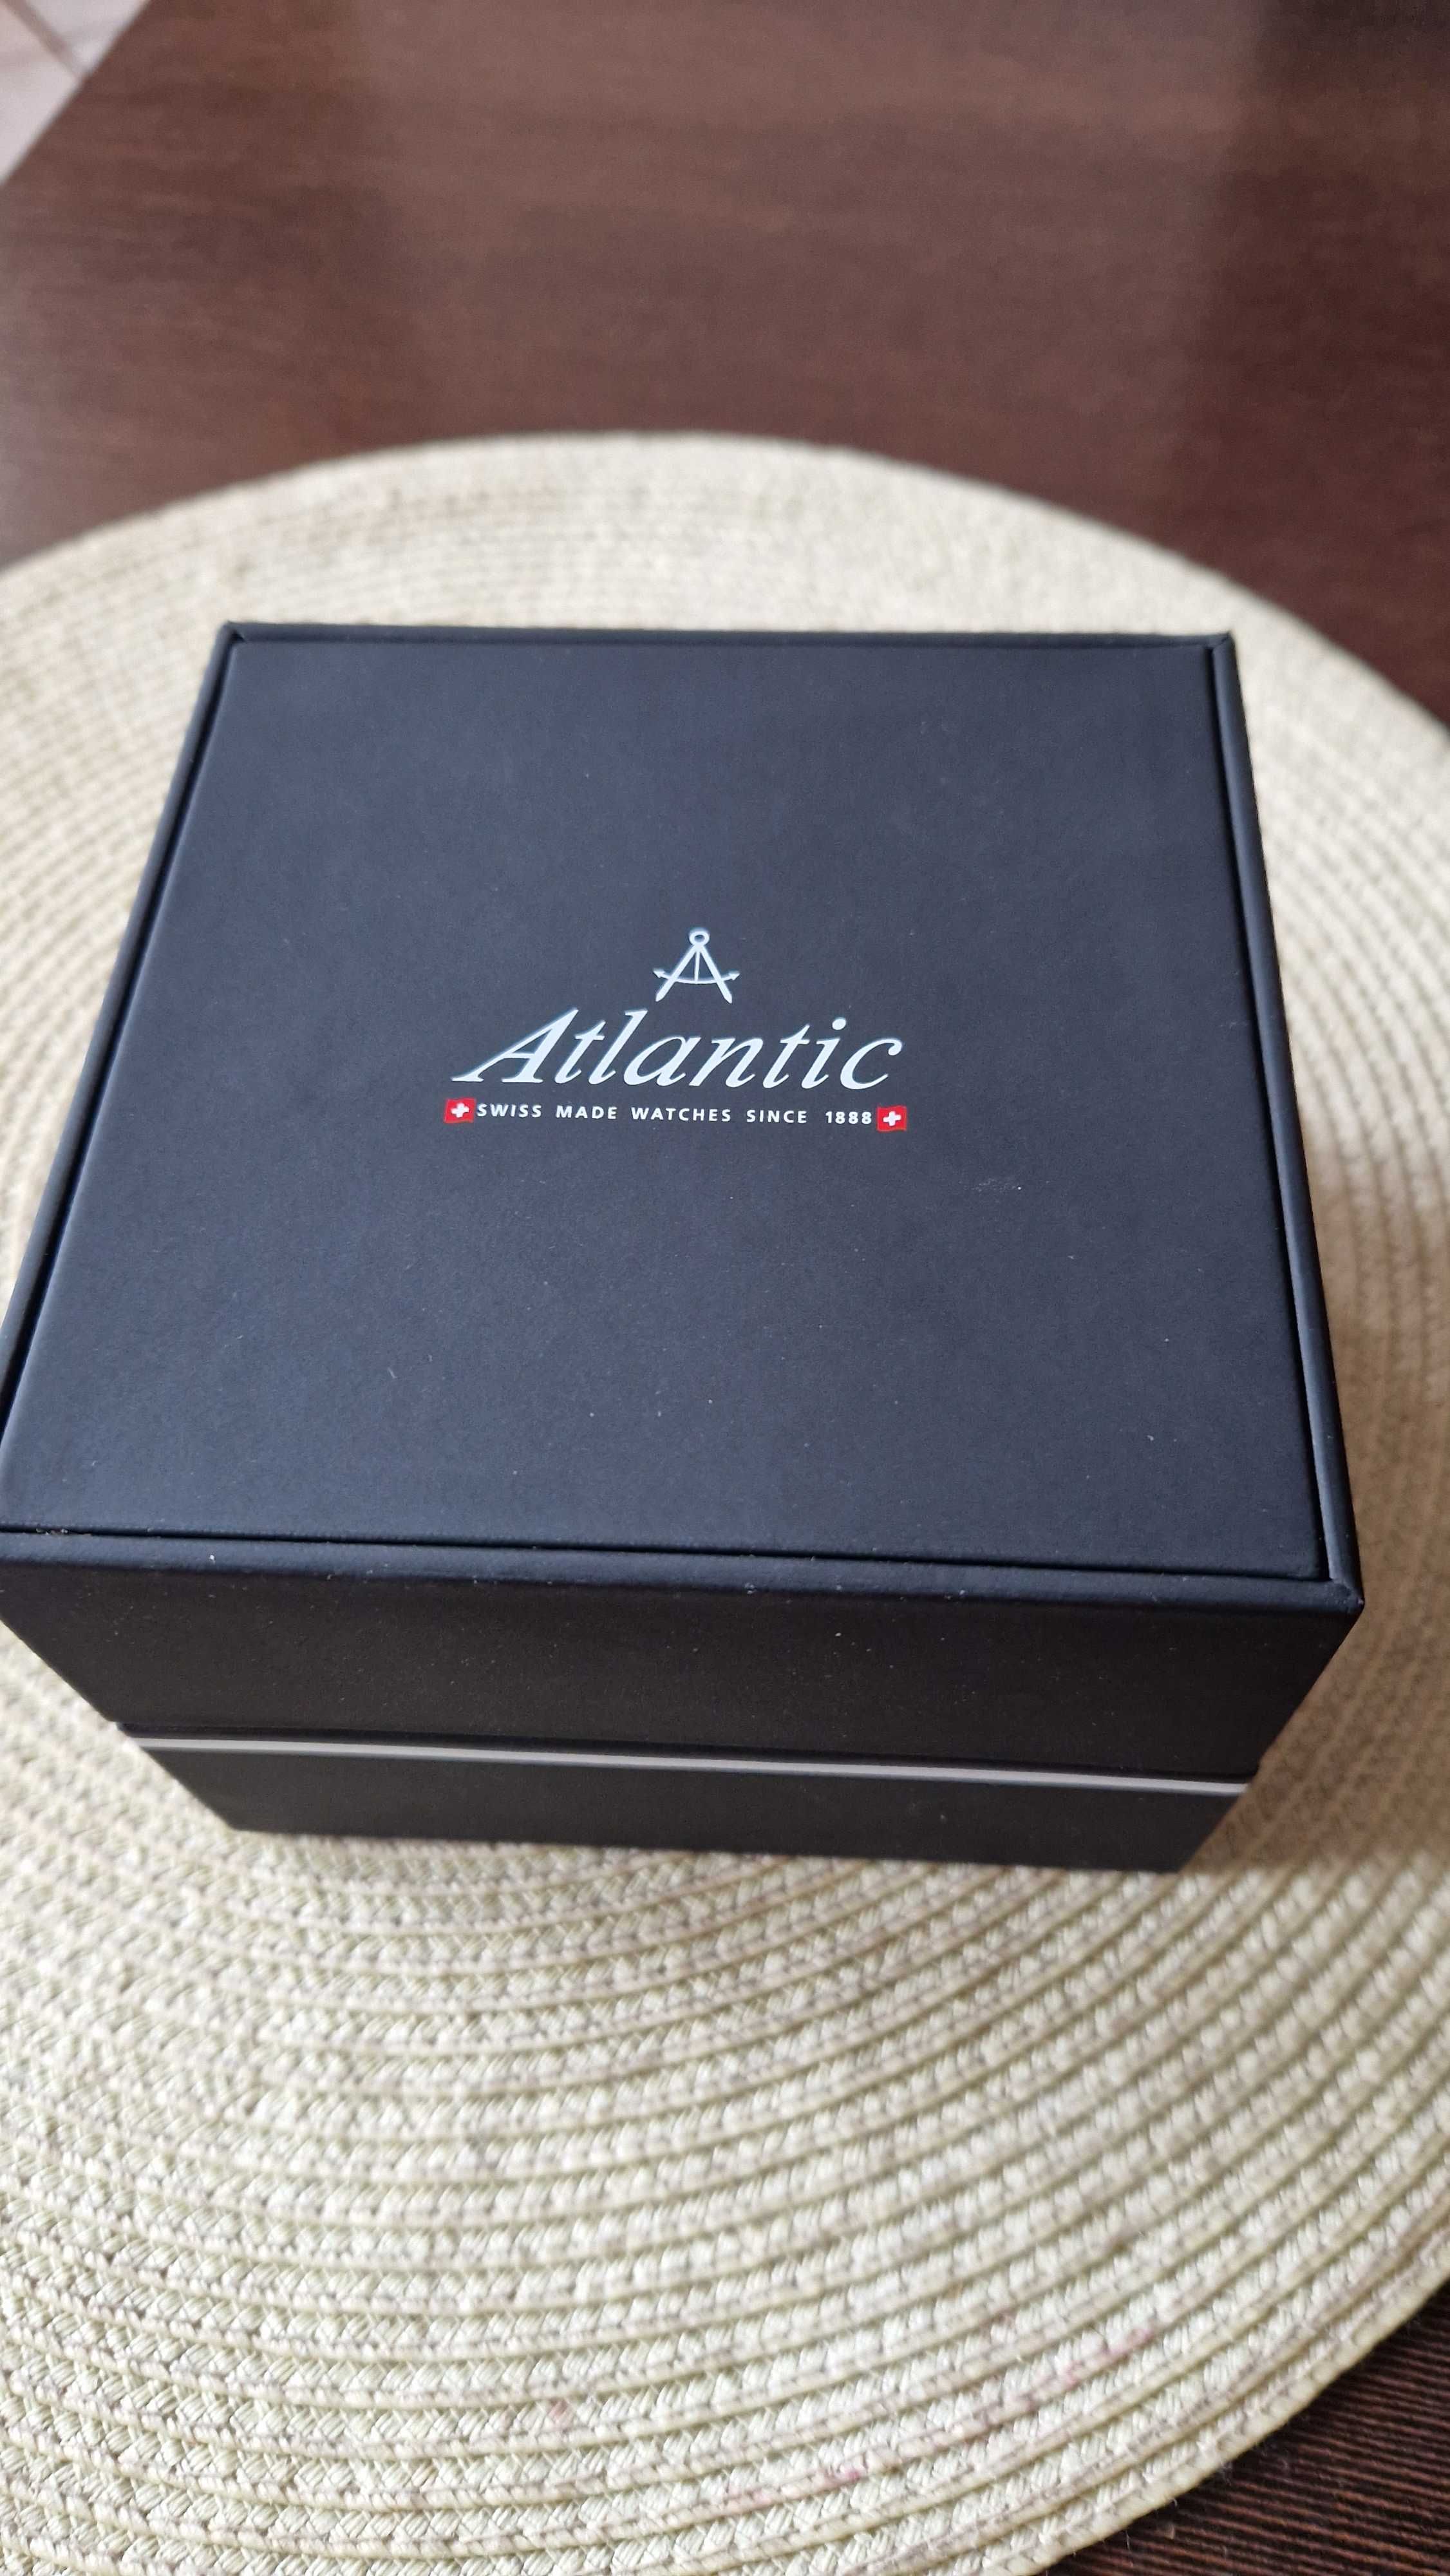 Zegarek Atlantic z limitowanym logiem Kompanii piwowarskiej .